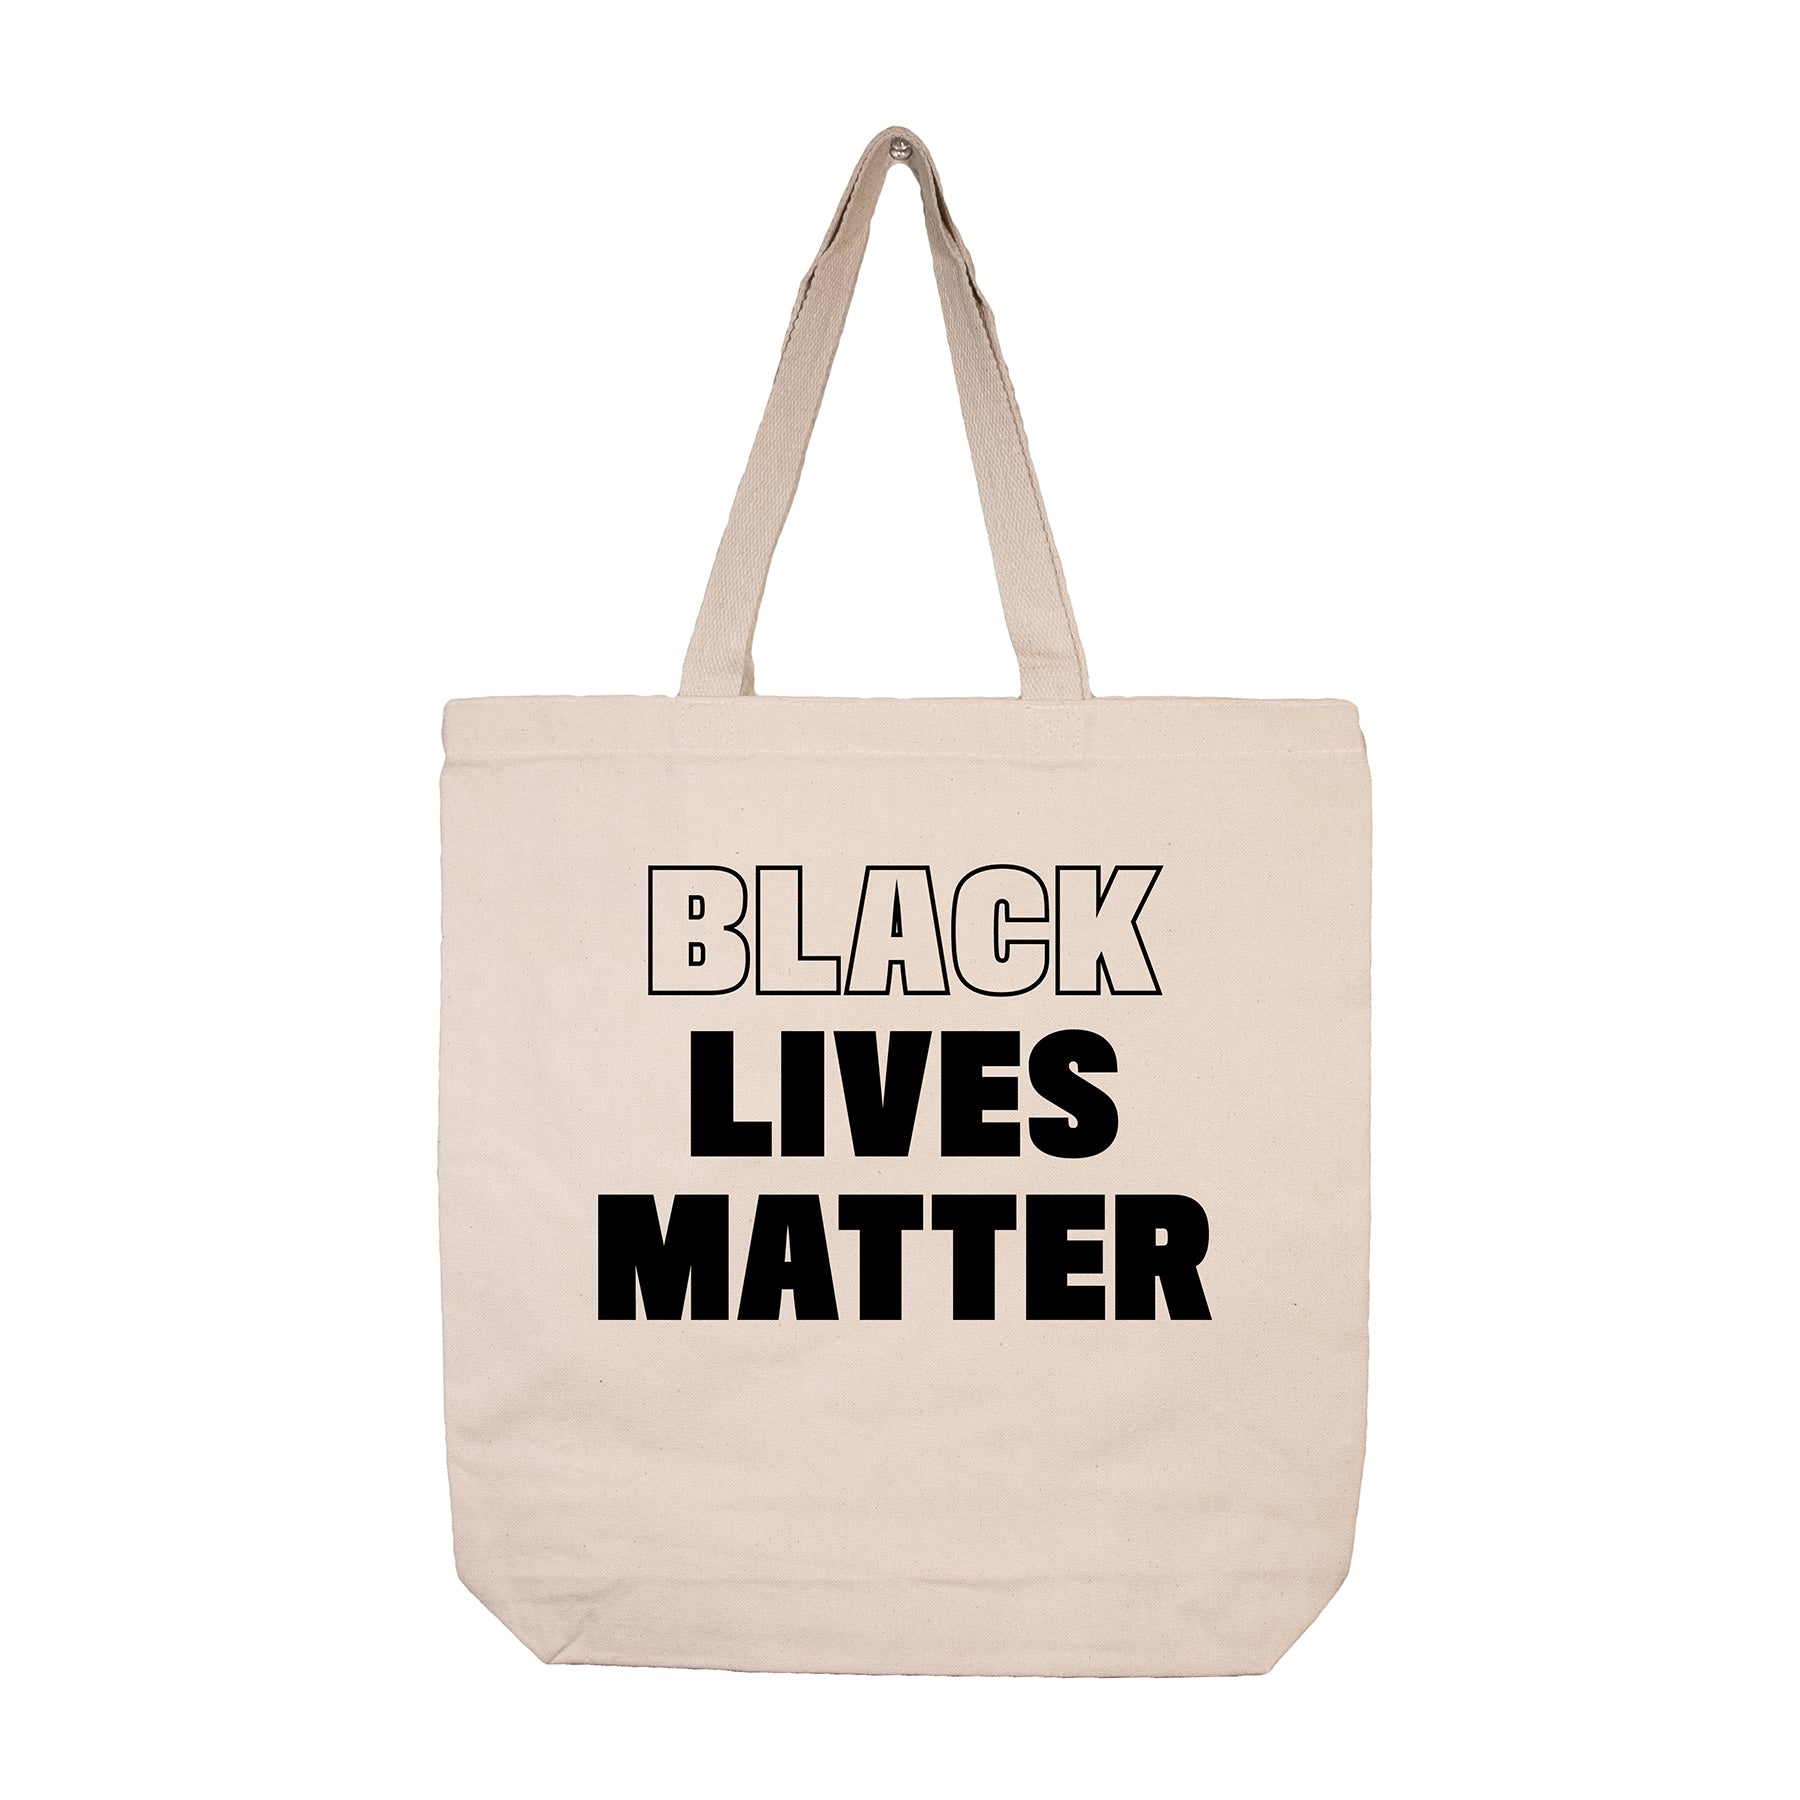 Tan Tote Bag with Black text "Black Lives Matter" #BlackLivesMatter #BLM